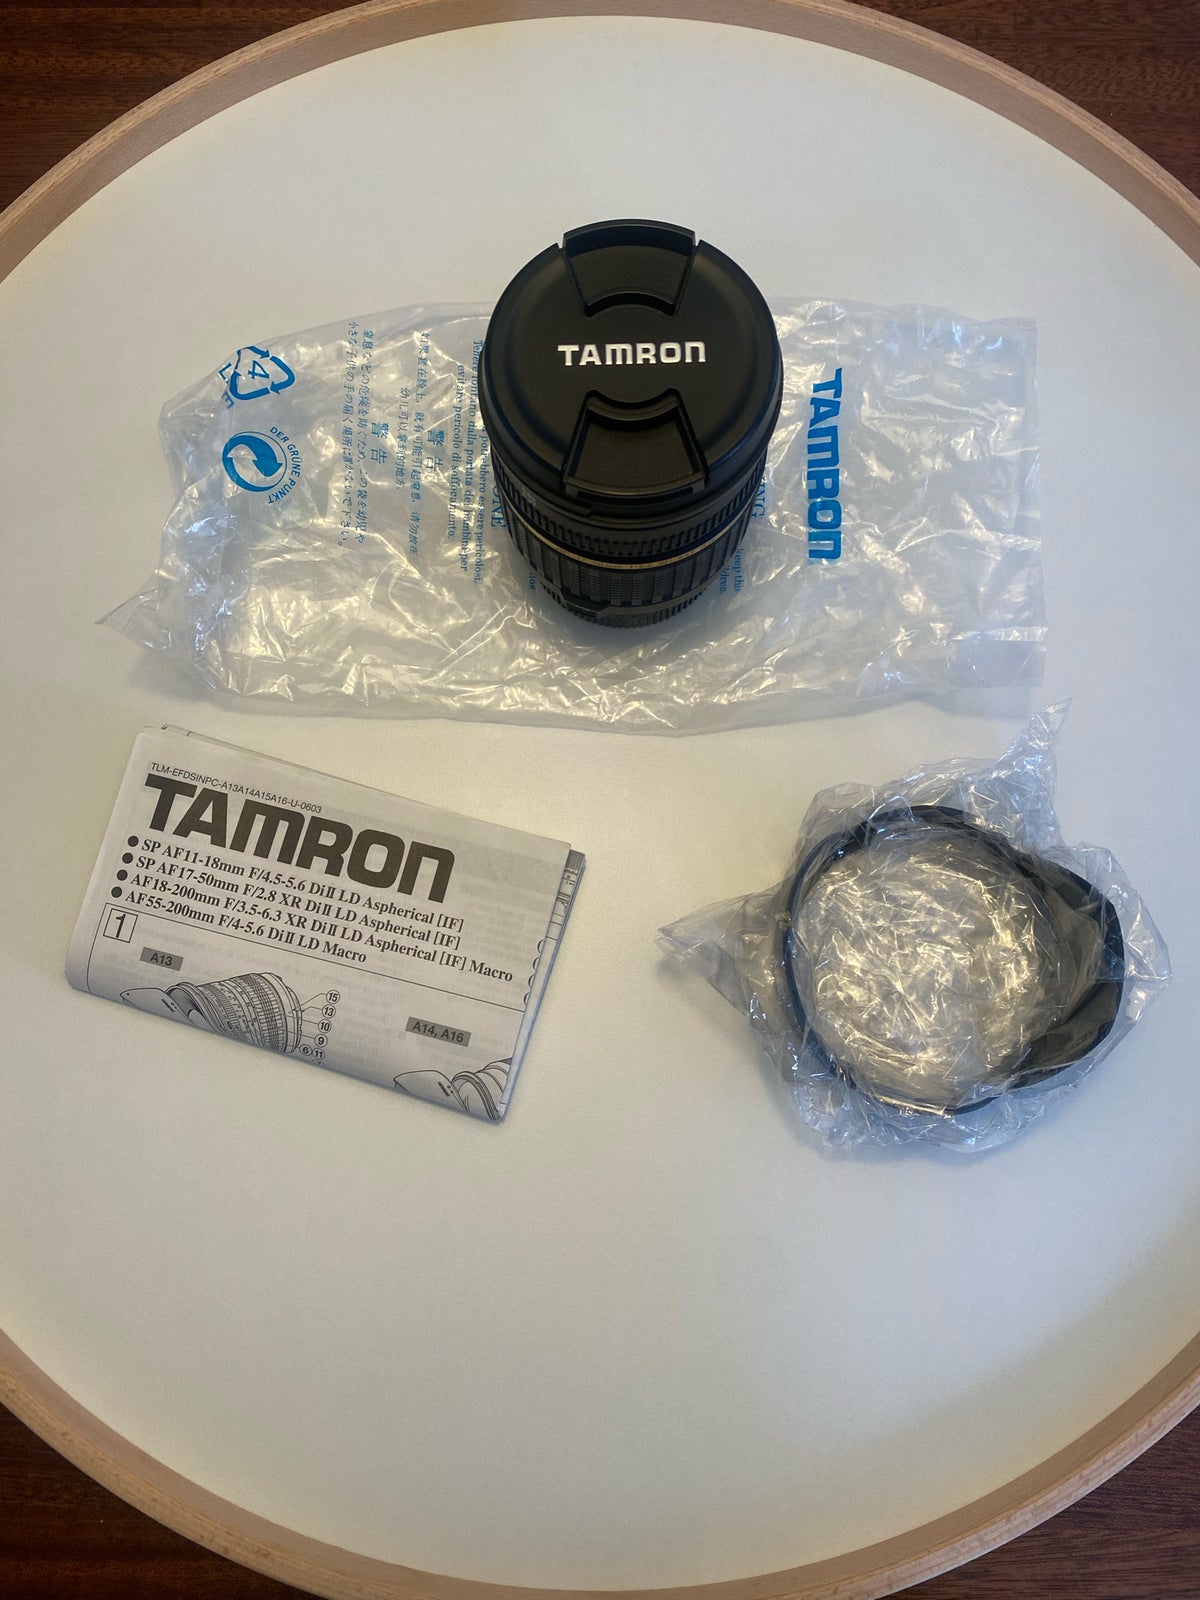 Kameralinse, Tamron 28-75mm f/2.8 xr di ld aspherical